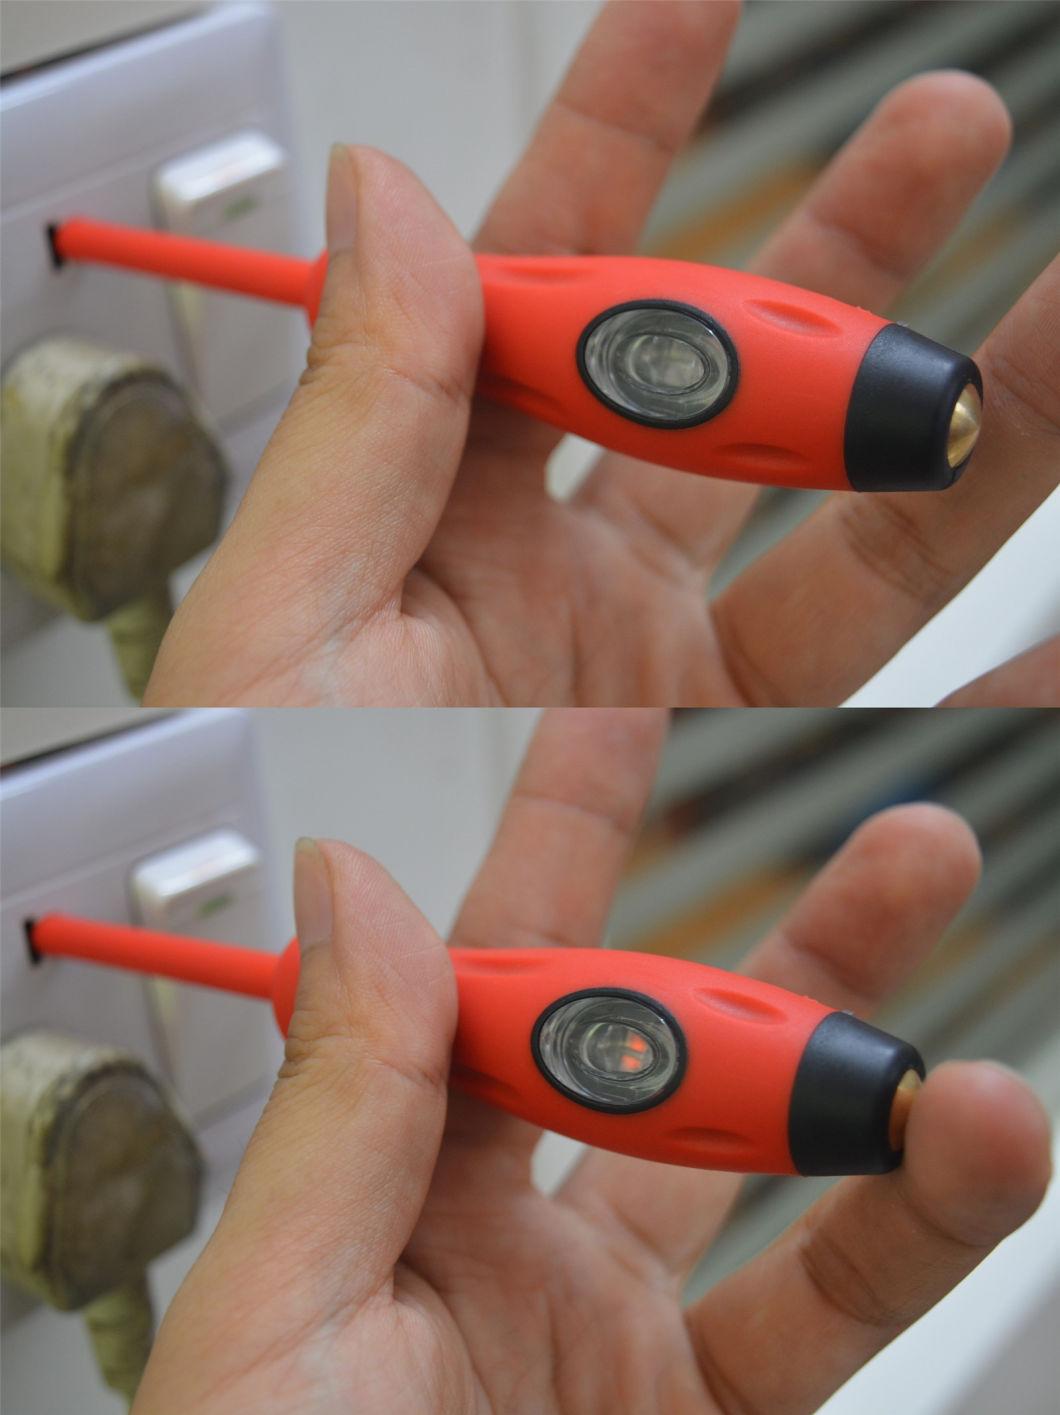 6mm*127mm High Quality Insulation Tester 100V-500V Test Voltage Pen Cr-V Material Screwdriver